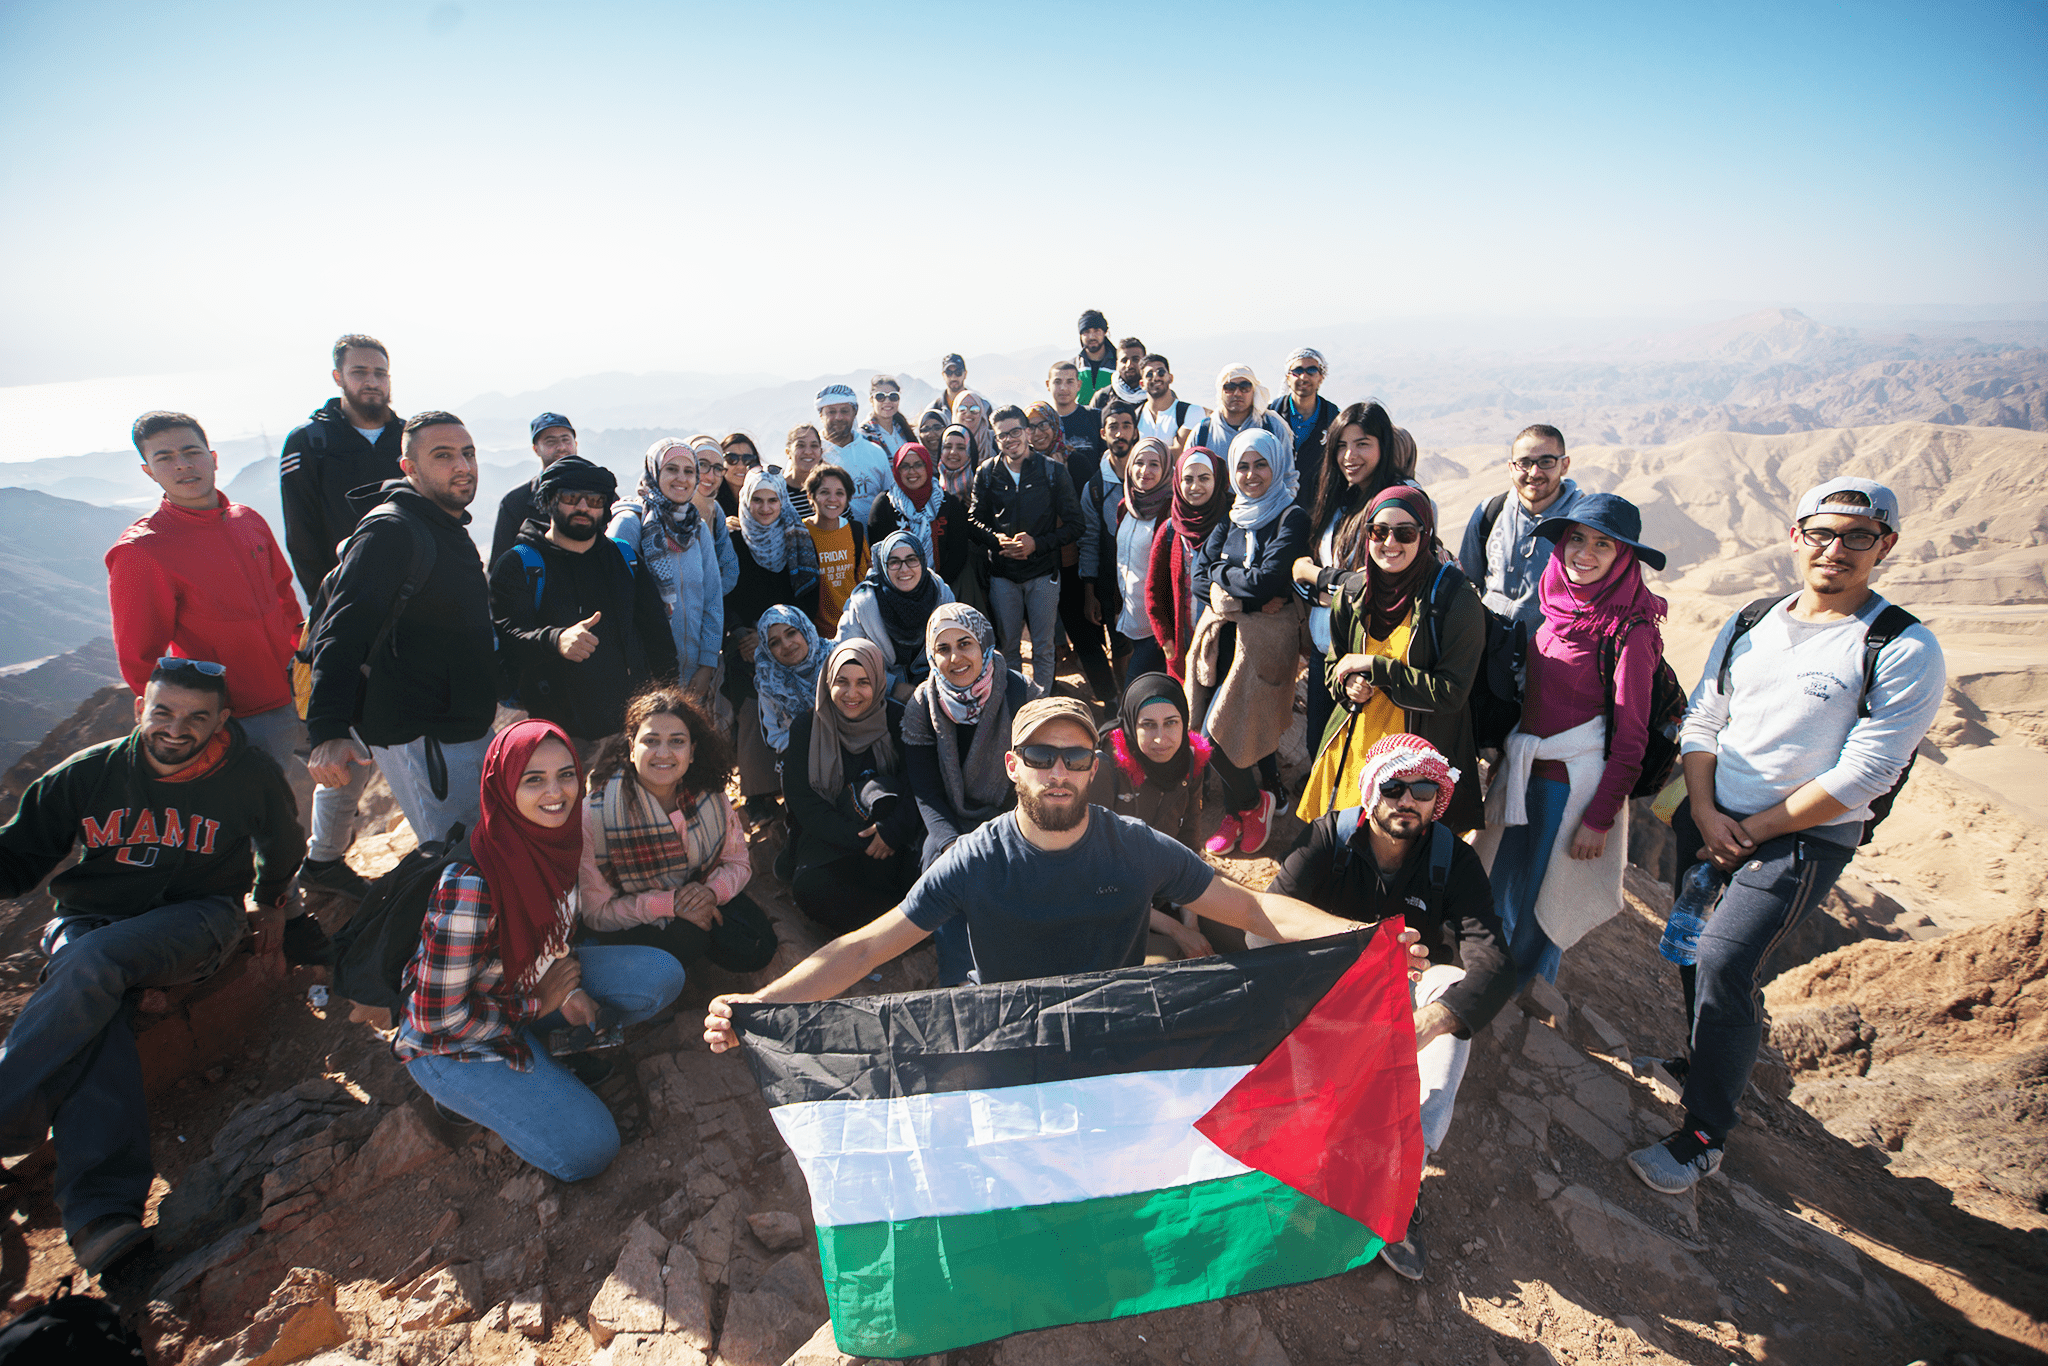 ضمن مشروع عيش البرج ٢ المرشد الشباب 3 يجول الجنوب الفلسطيني في معسكرا استكشافيا